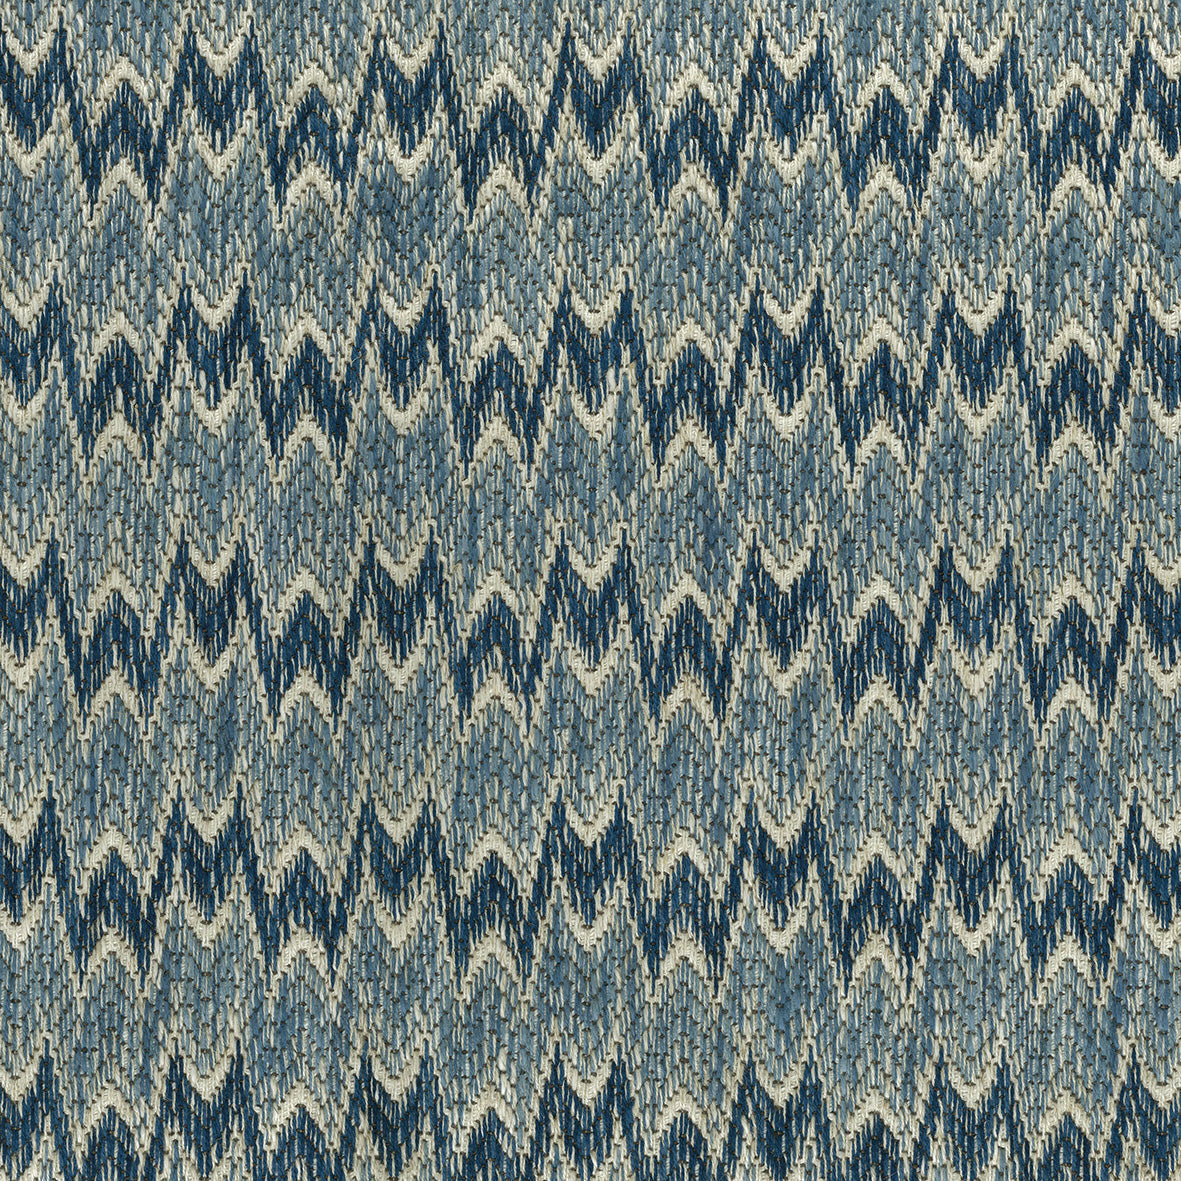 Nina Campbell Fabric - Montsoreau Weaves Dumas NCF4470-06